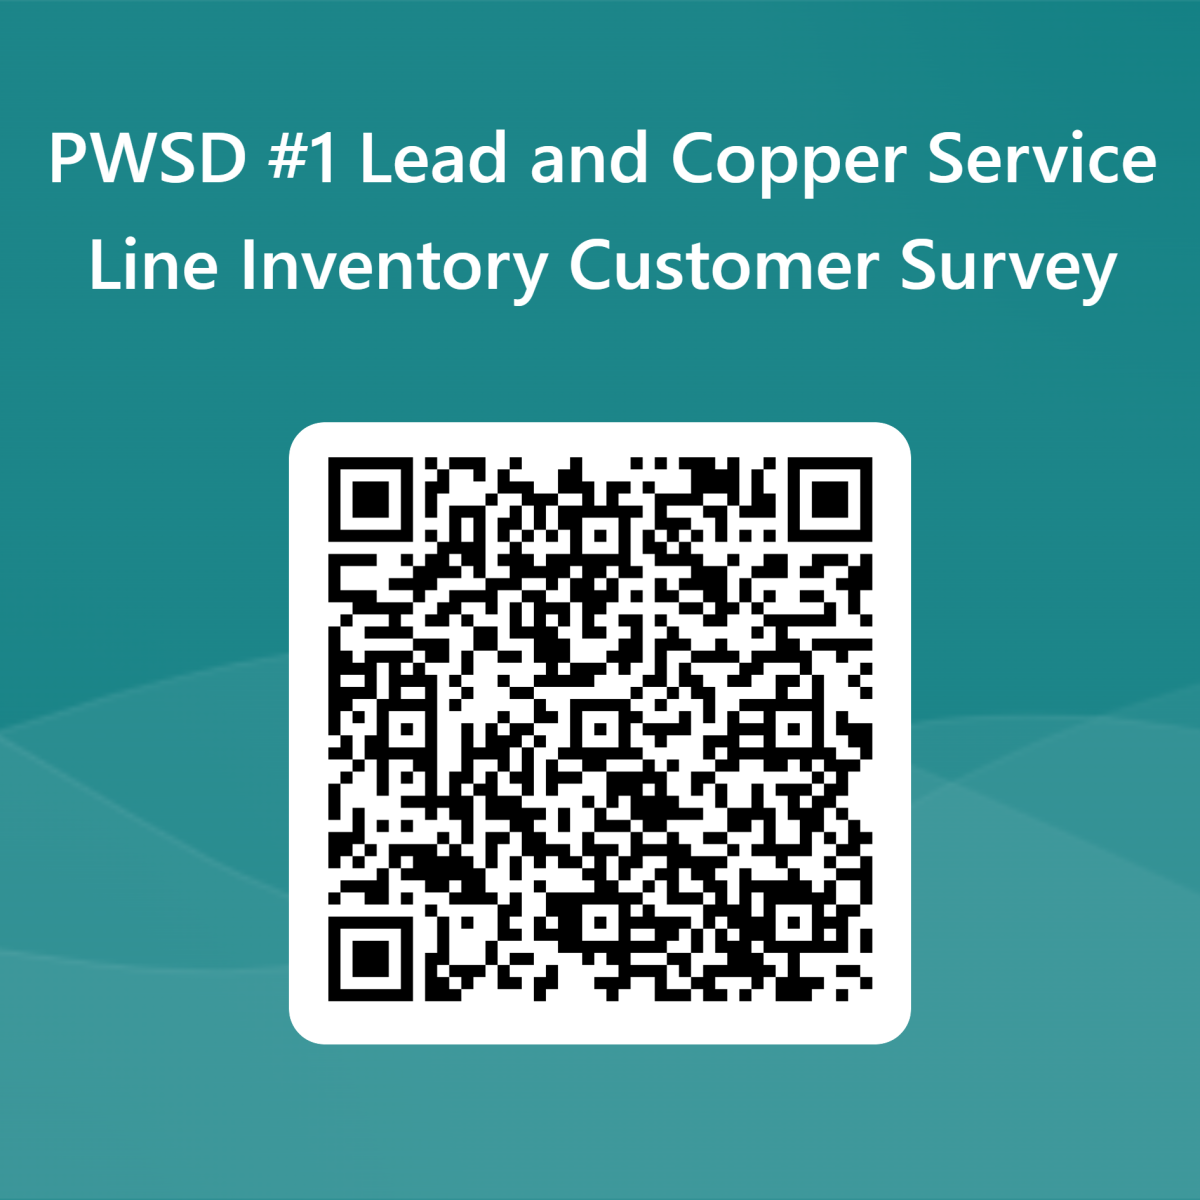 QR Code to Service Line Survey